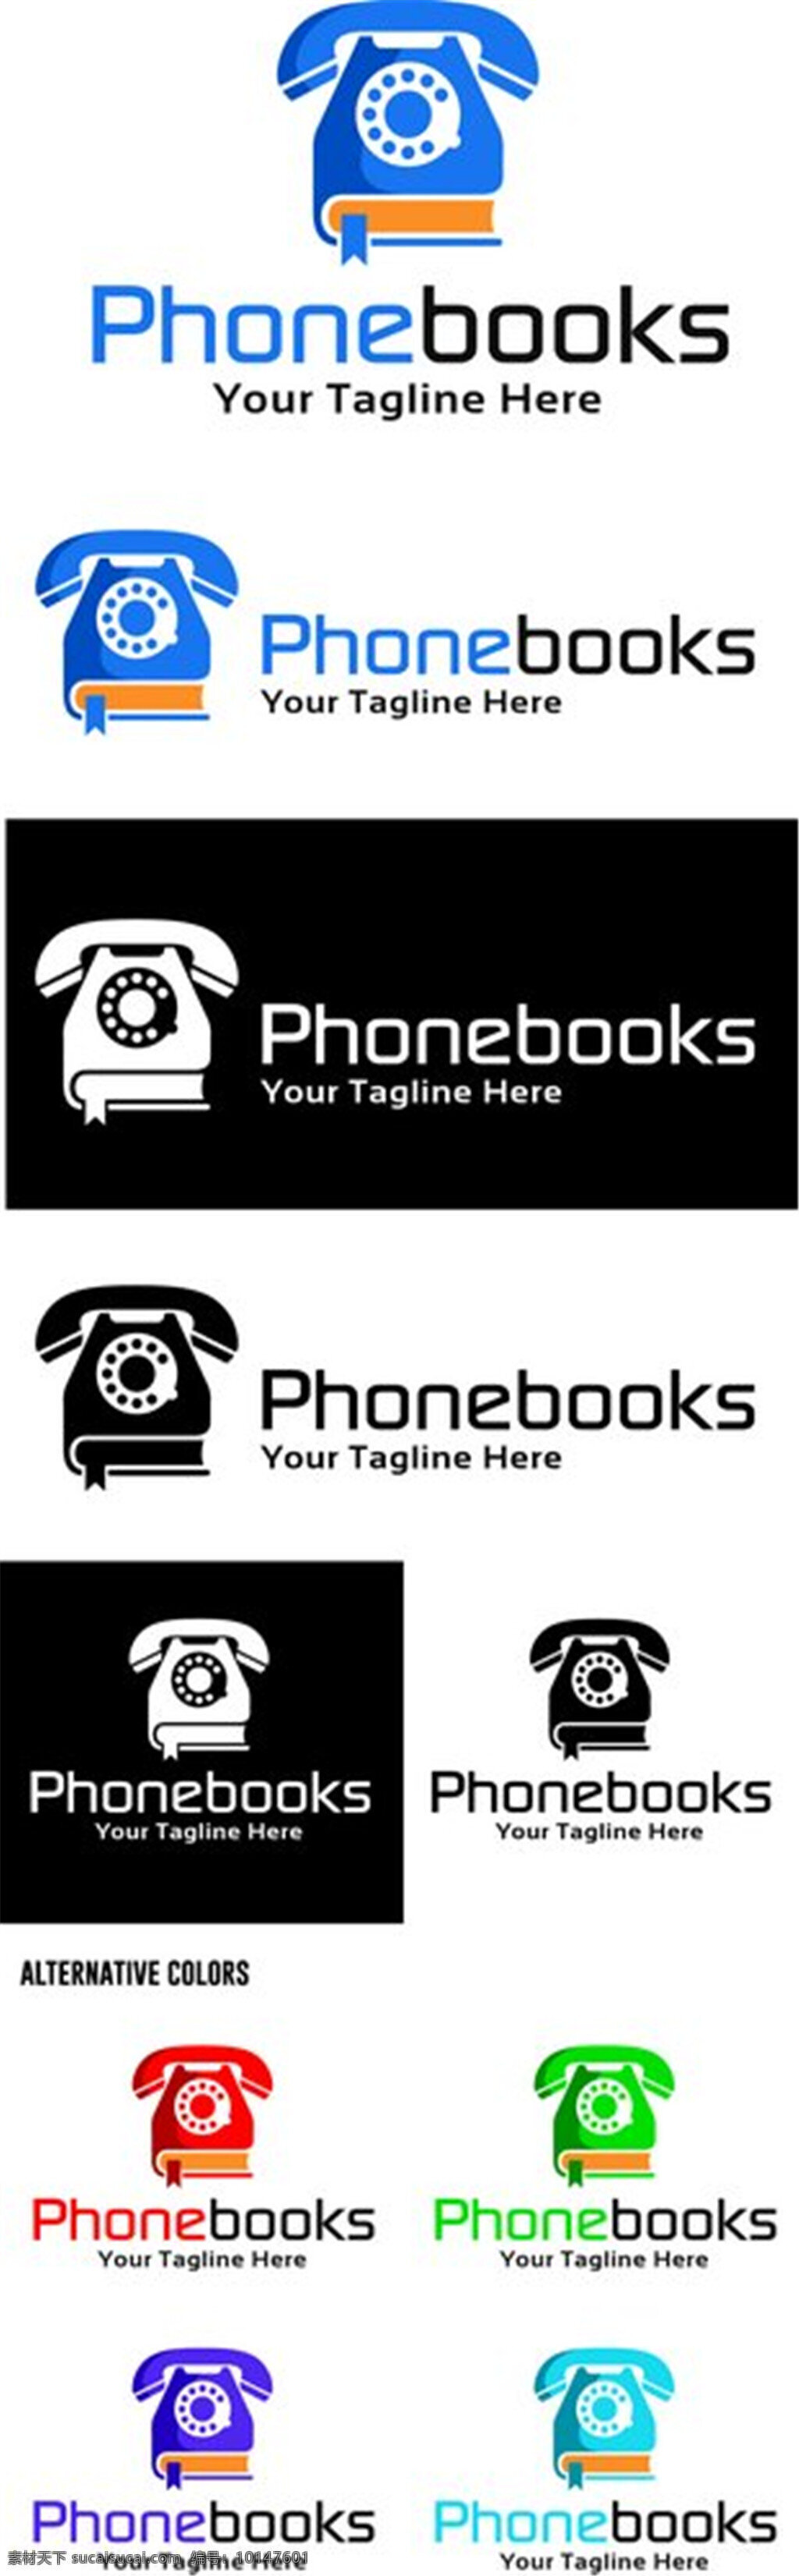 创意 书本 电话 标志 个性创意标志 logo设计 logo 图形 商标设计 企业logo 公司logo 行业标志 标志图标 矢量素材